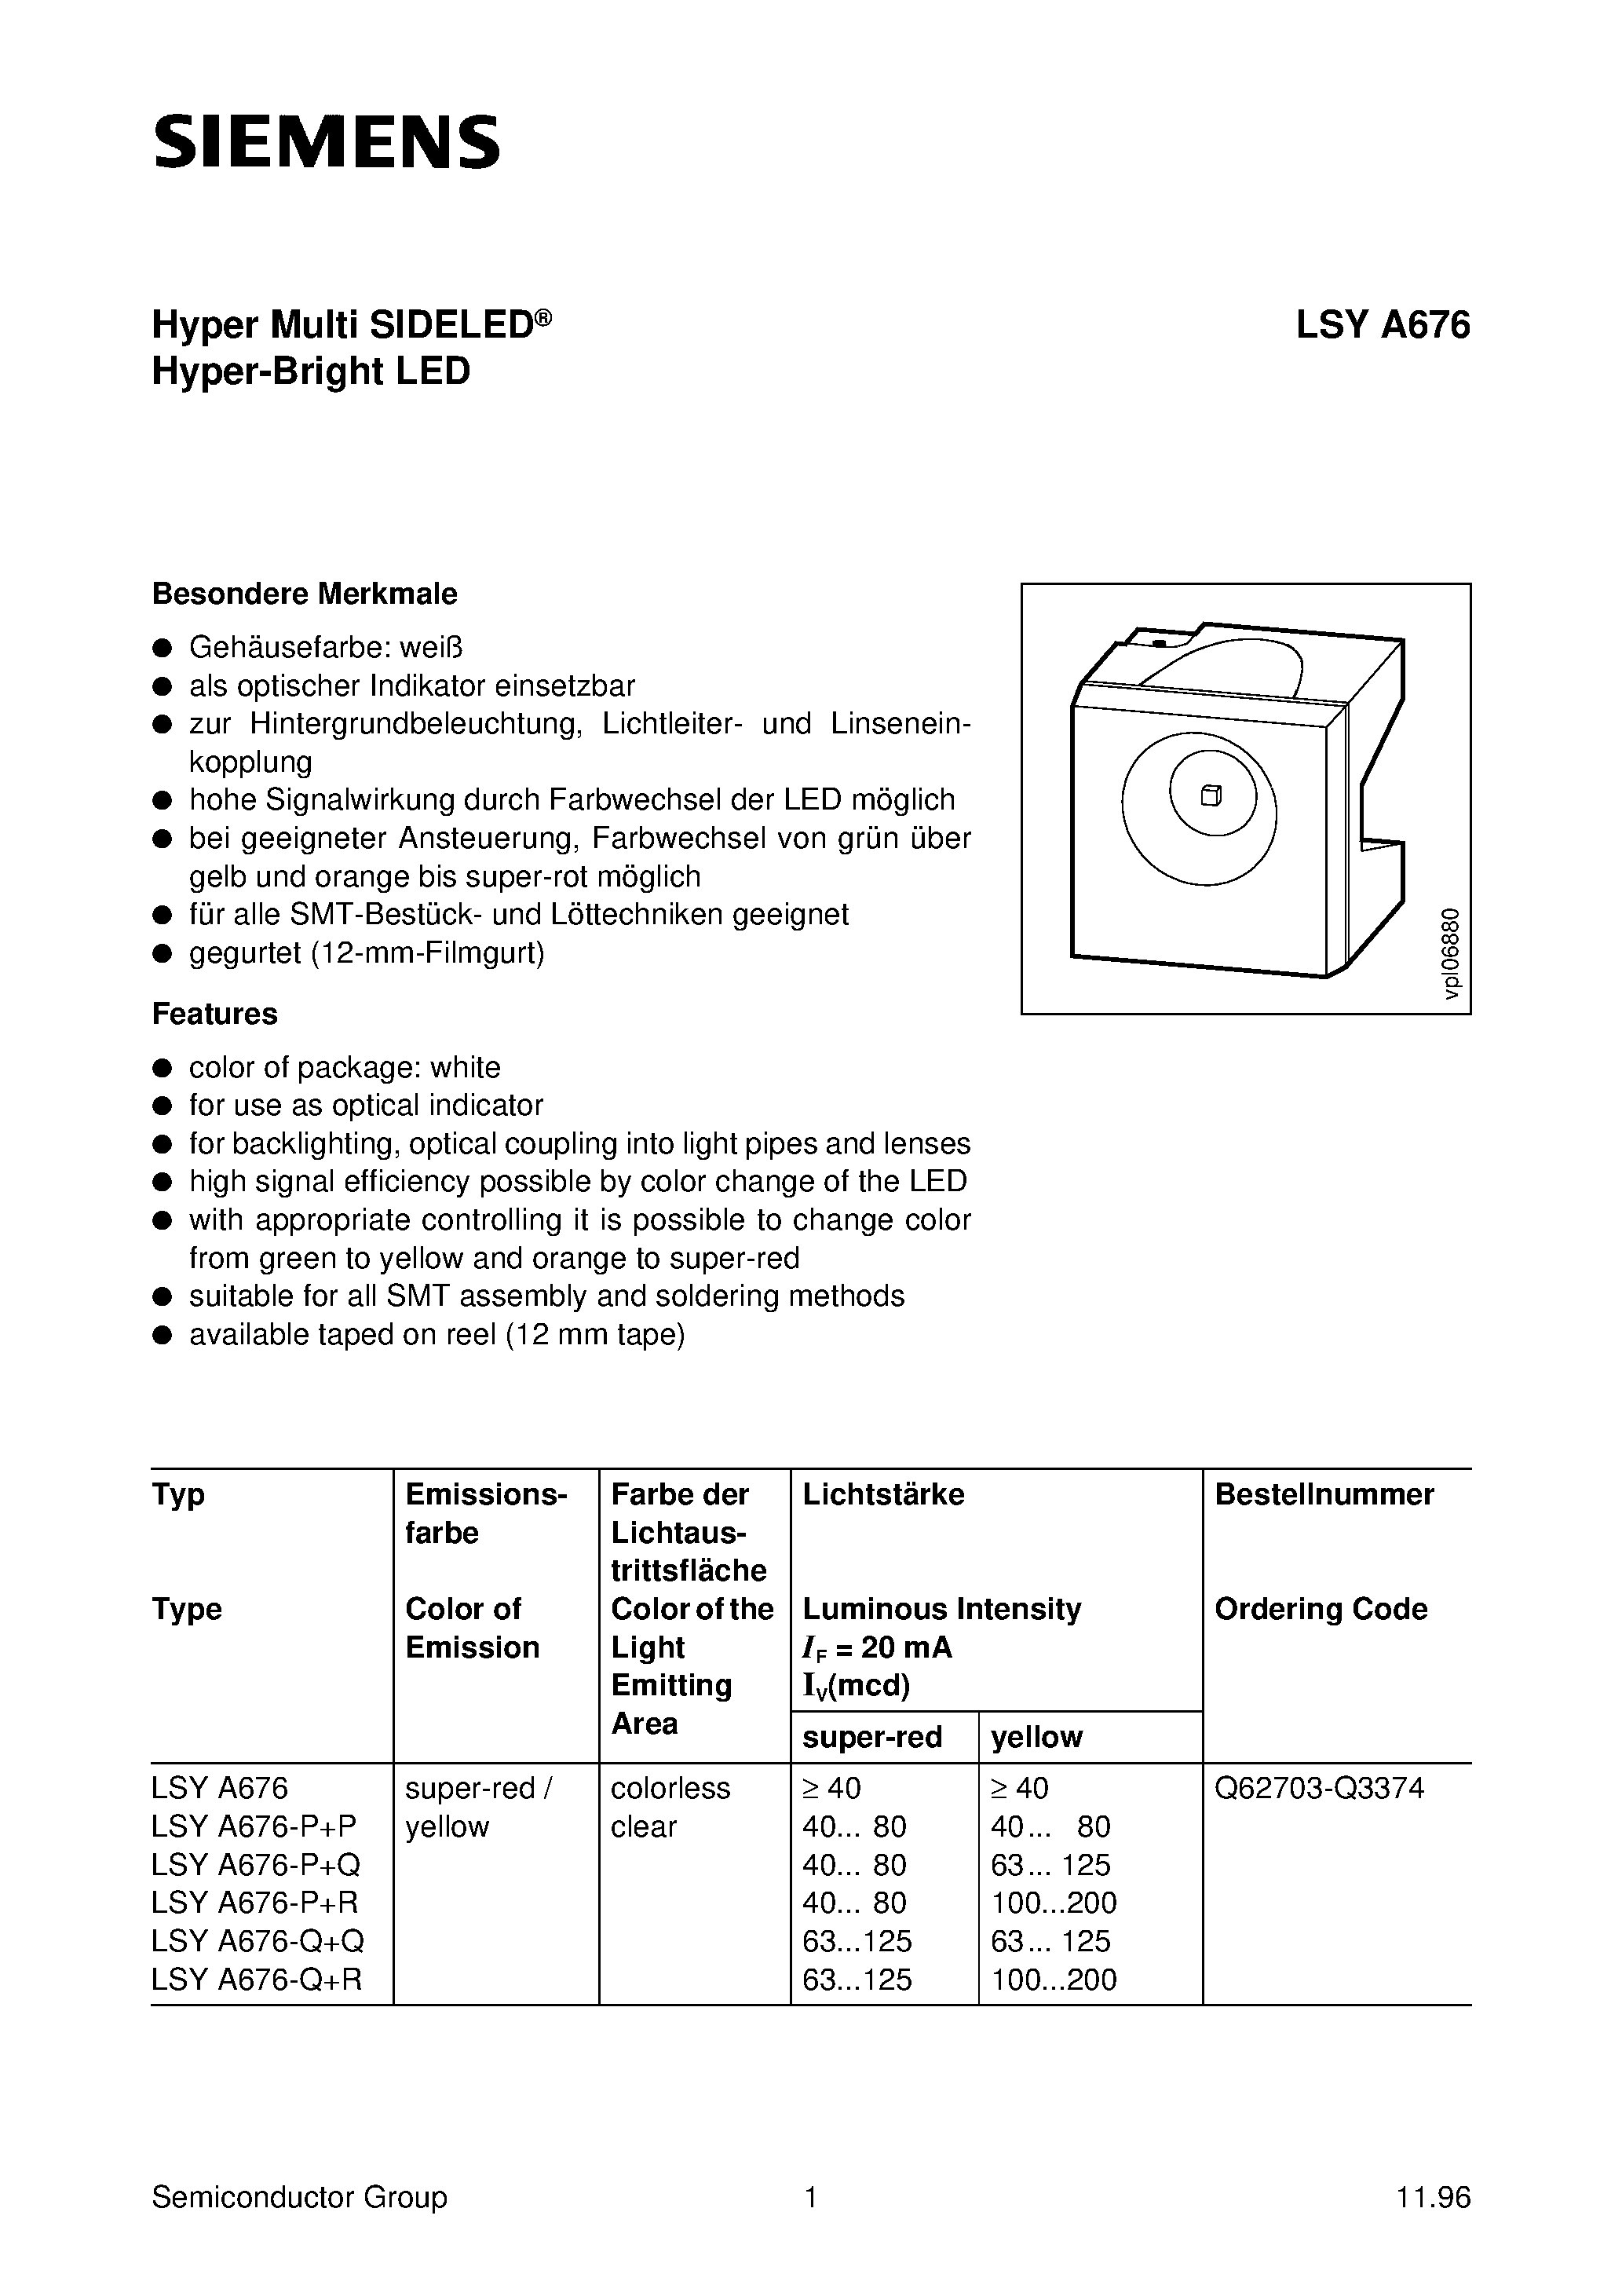 Даташит LSYA676-Q+Q - Hyper Multi SIDELED Hyper-Bright LED страница 1